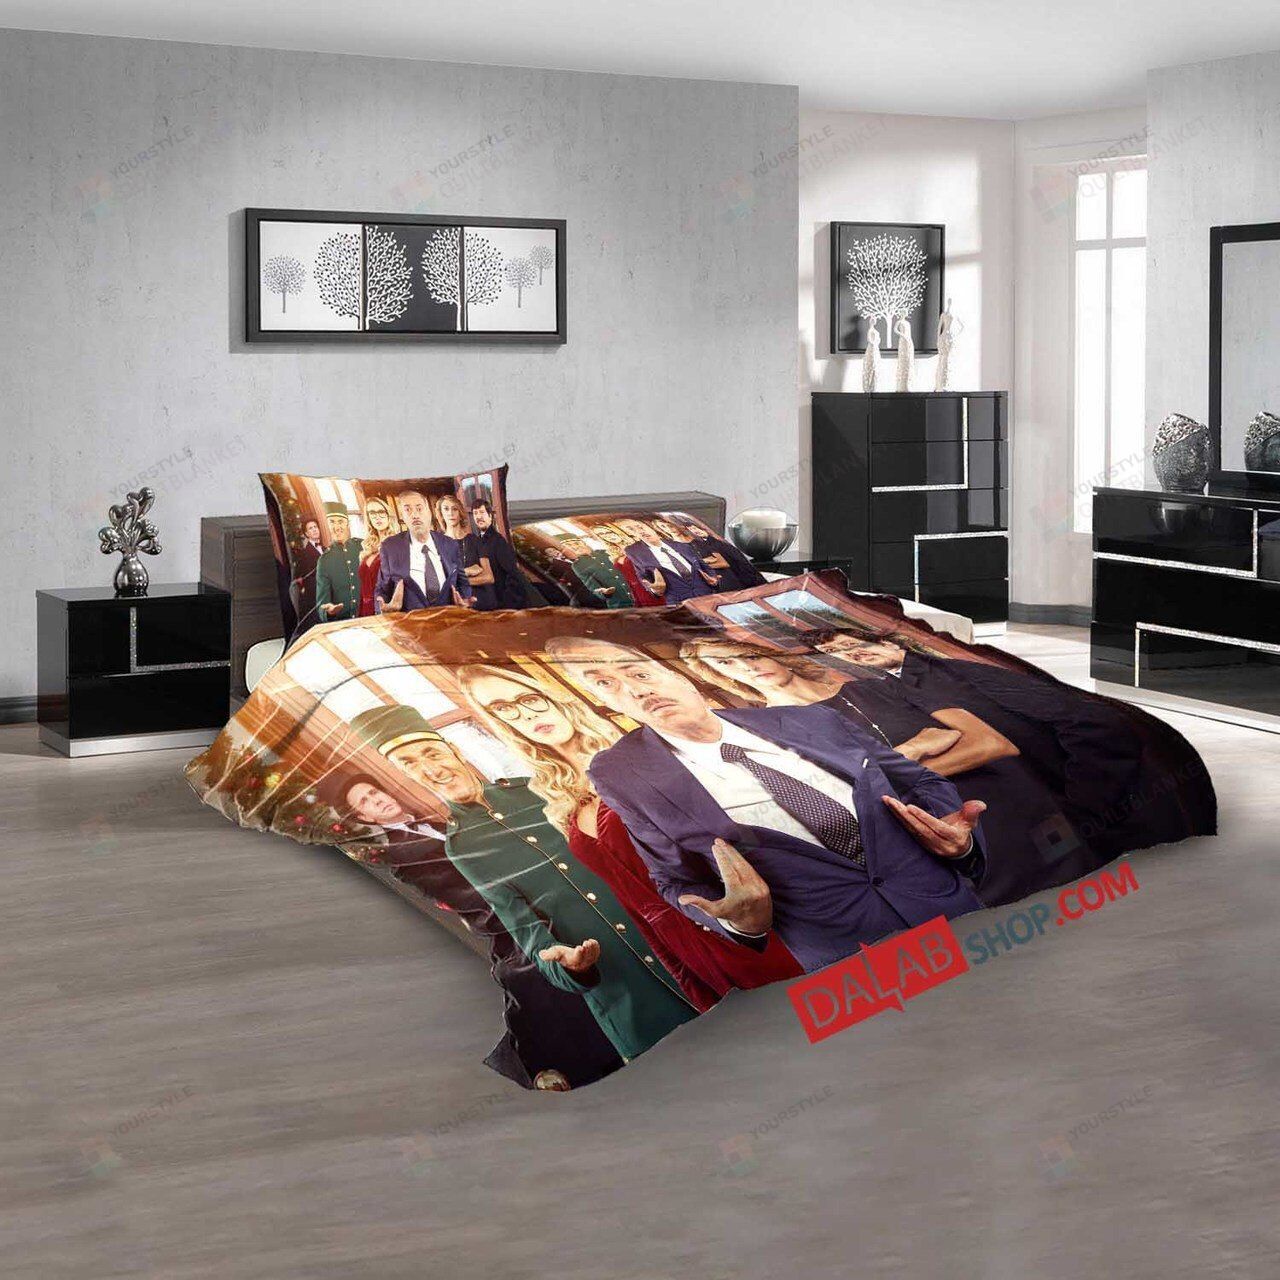 Movie 5 Star Christmas N 3d Duvet Cover Bedroom Sets Bedding Sets